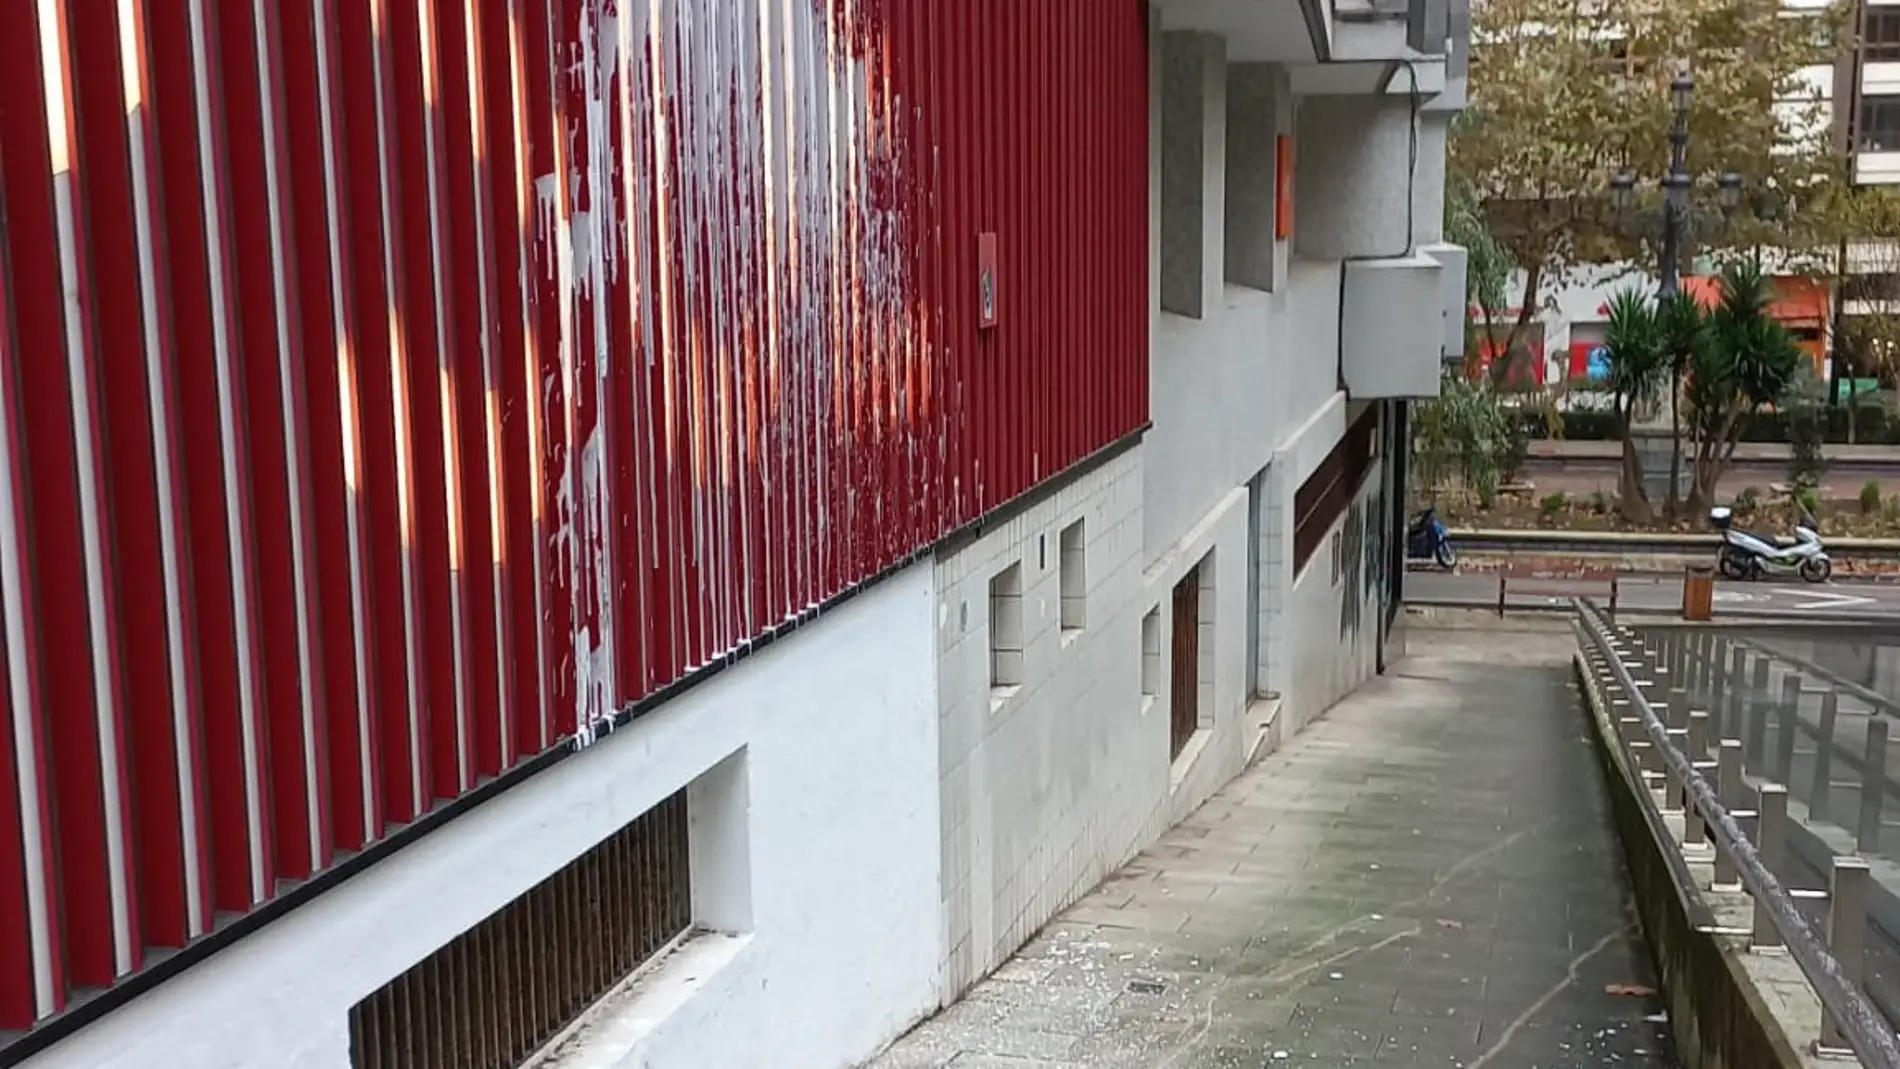 El PSOE de Cantabria denuncia un "ataque" a su sede con pintura